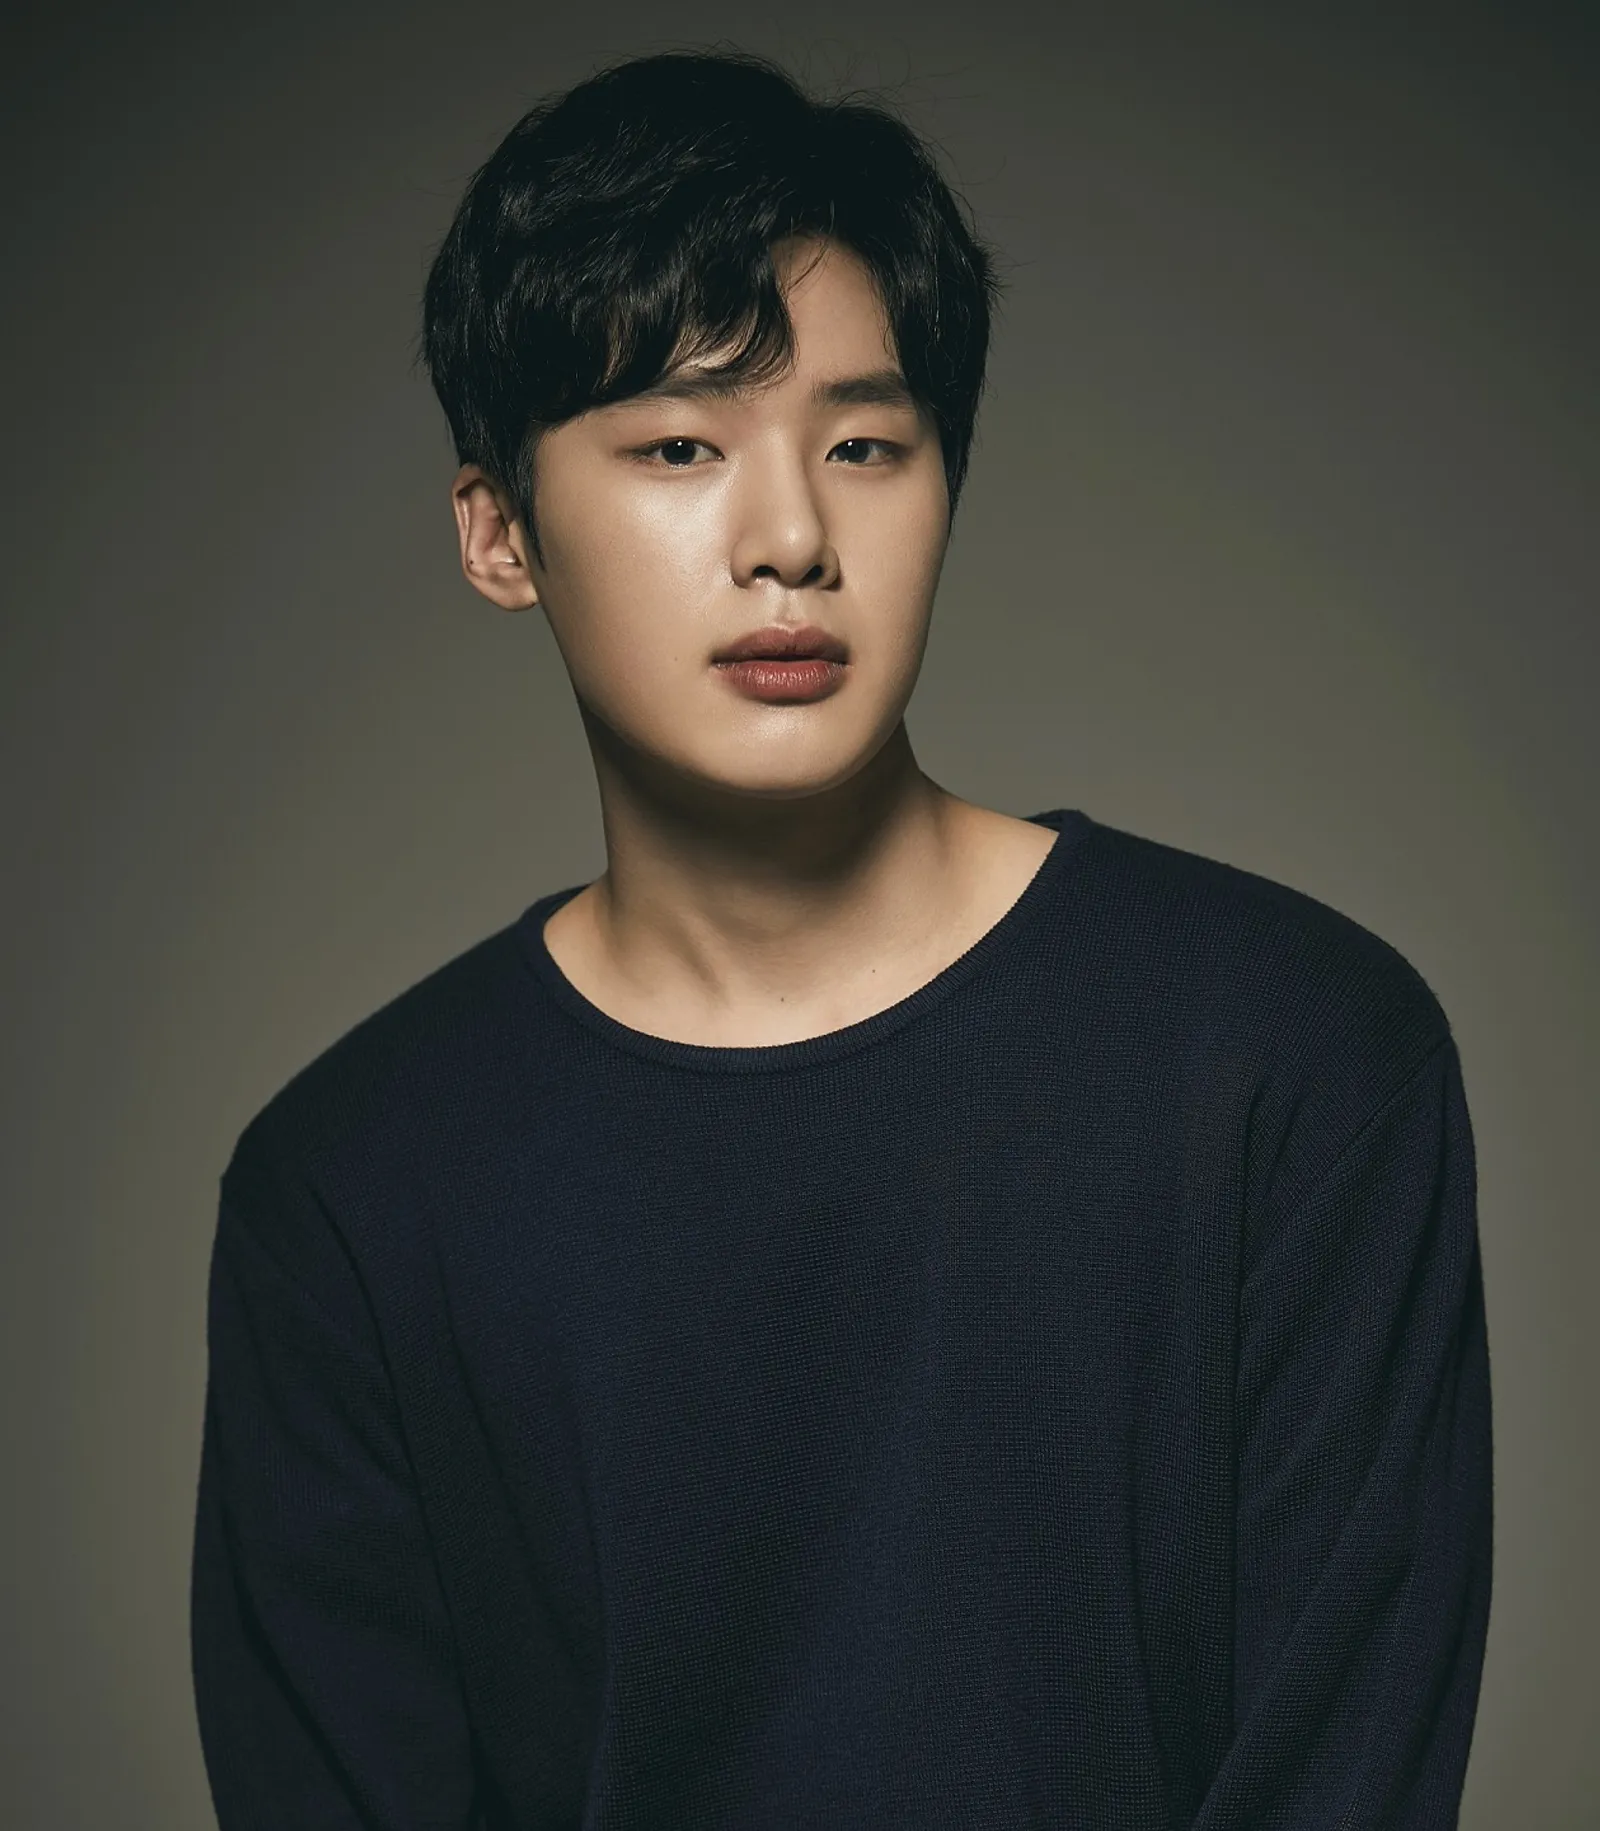 Kronologi Panjang dan Fakta Kasus Bullying Aktor Kim Dong Hee